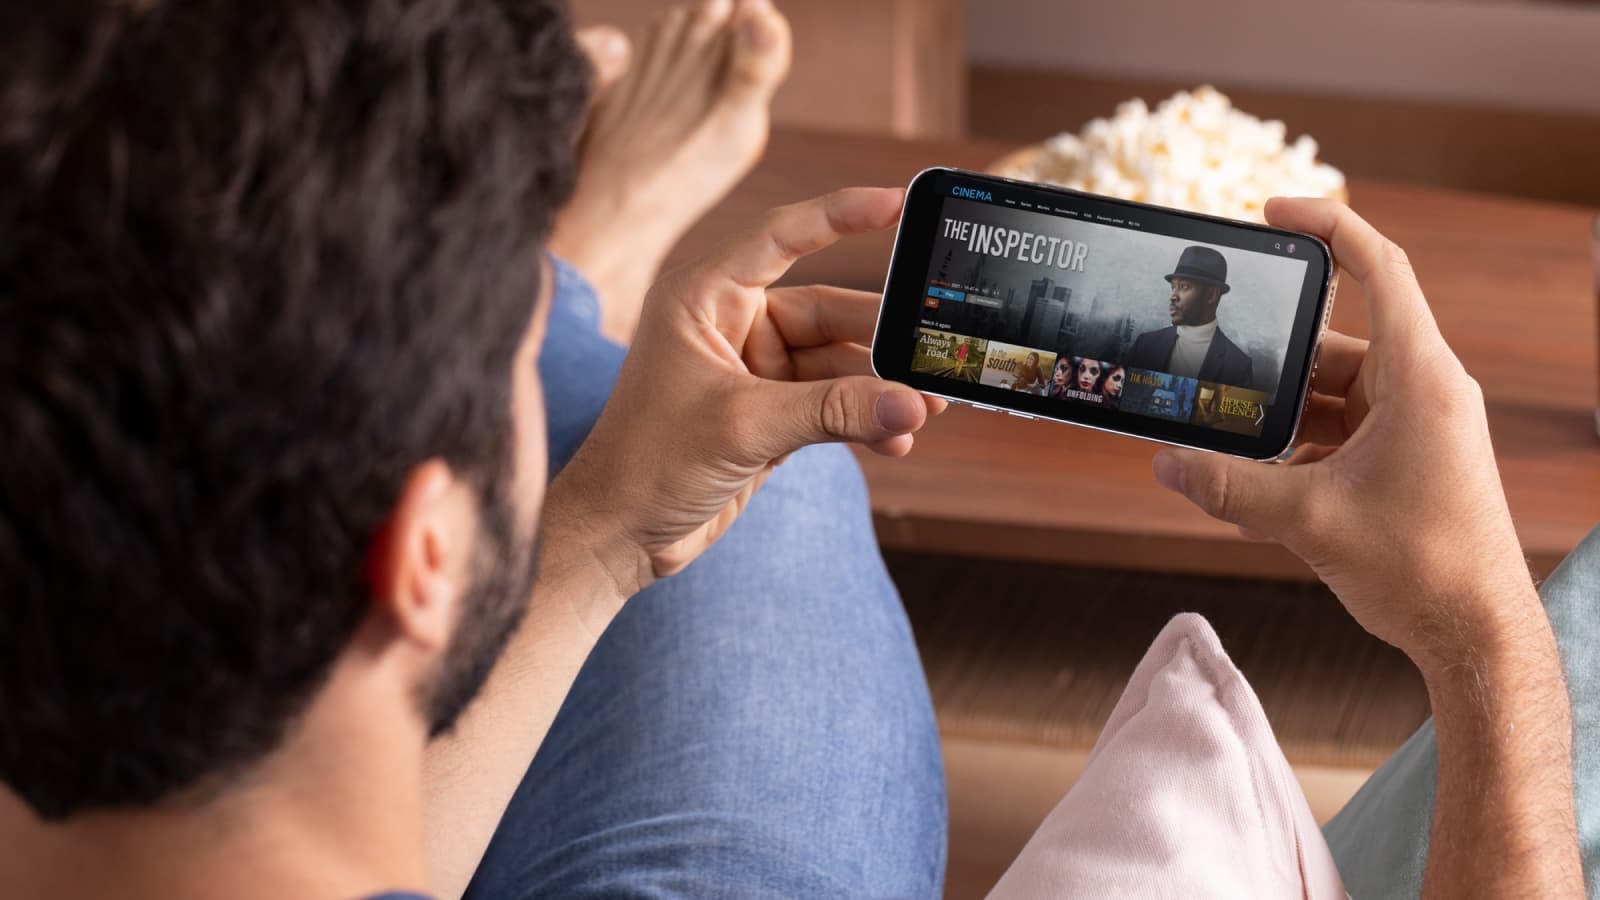 Usa Android? Descubra 9 aplicativos para assistir a filmes grátis